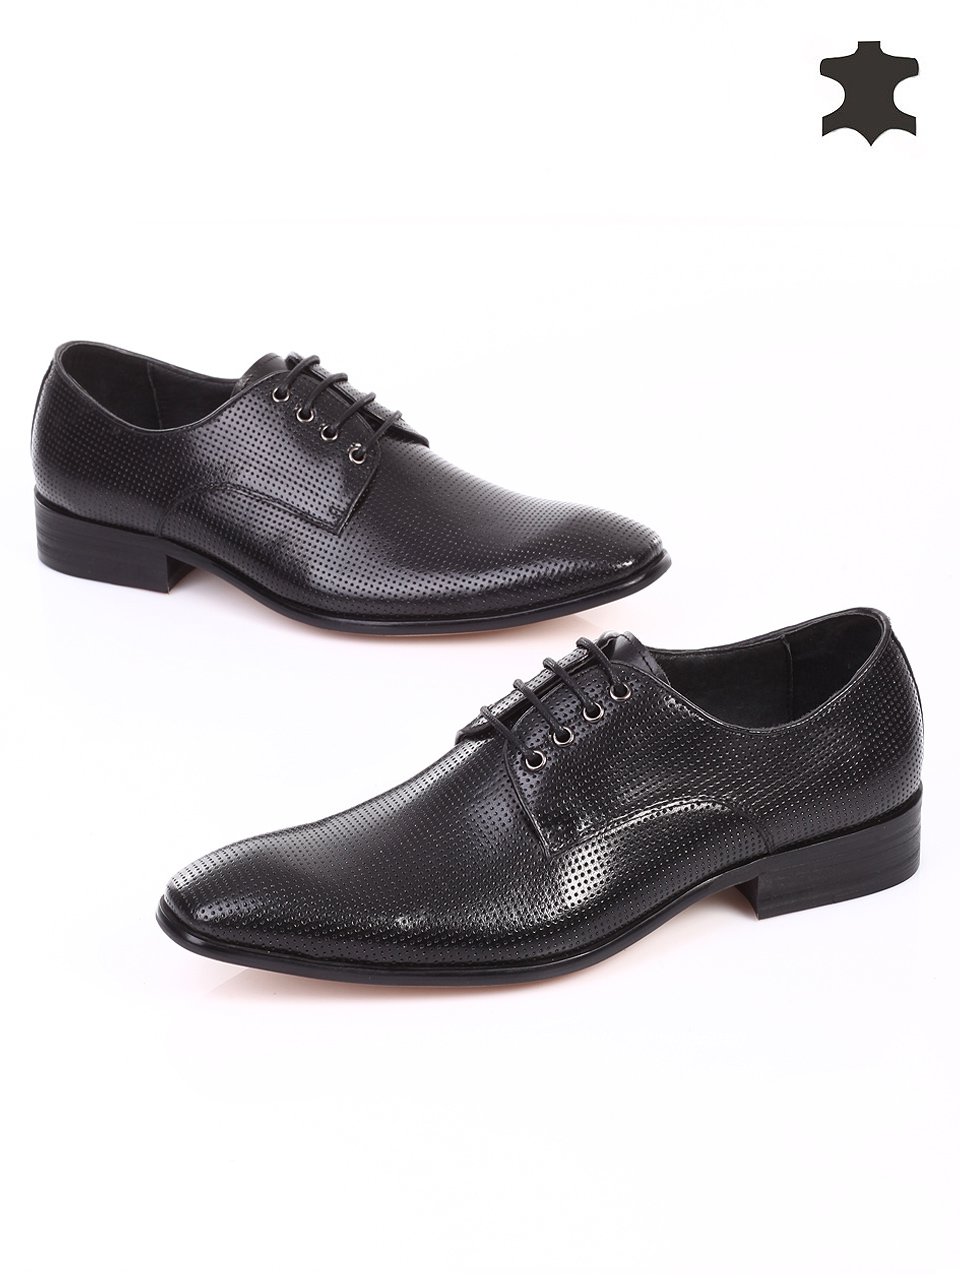 Елегантни мъжки обувки от естествена кожа 7N-15227 black